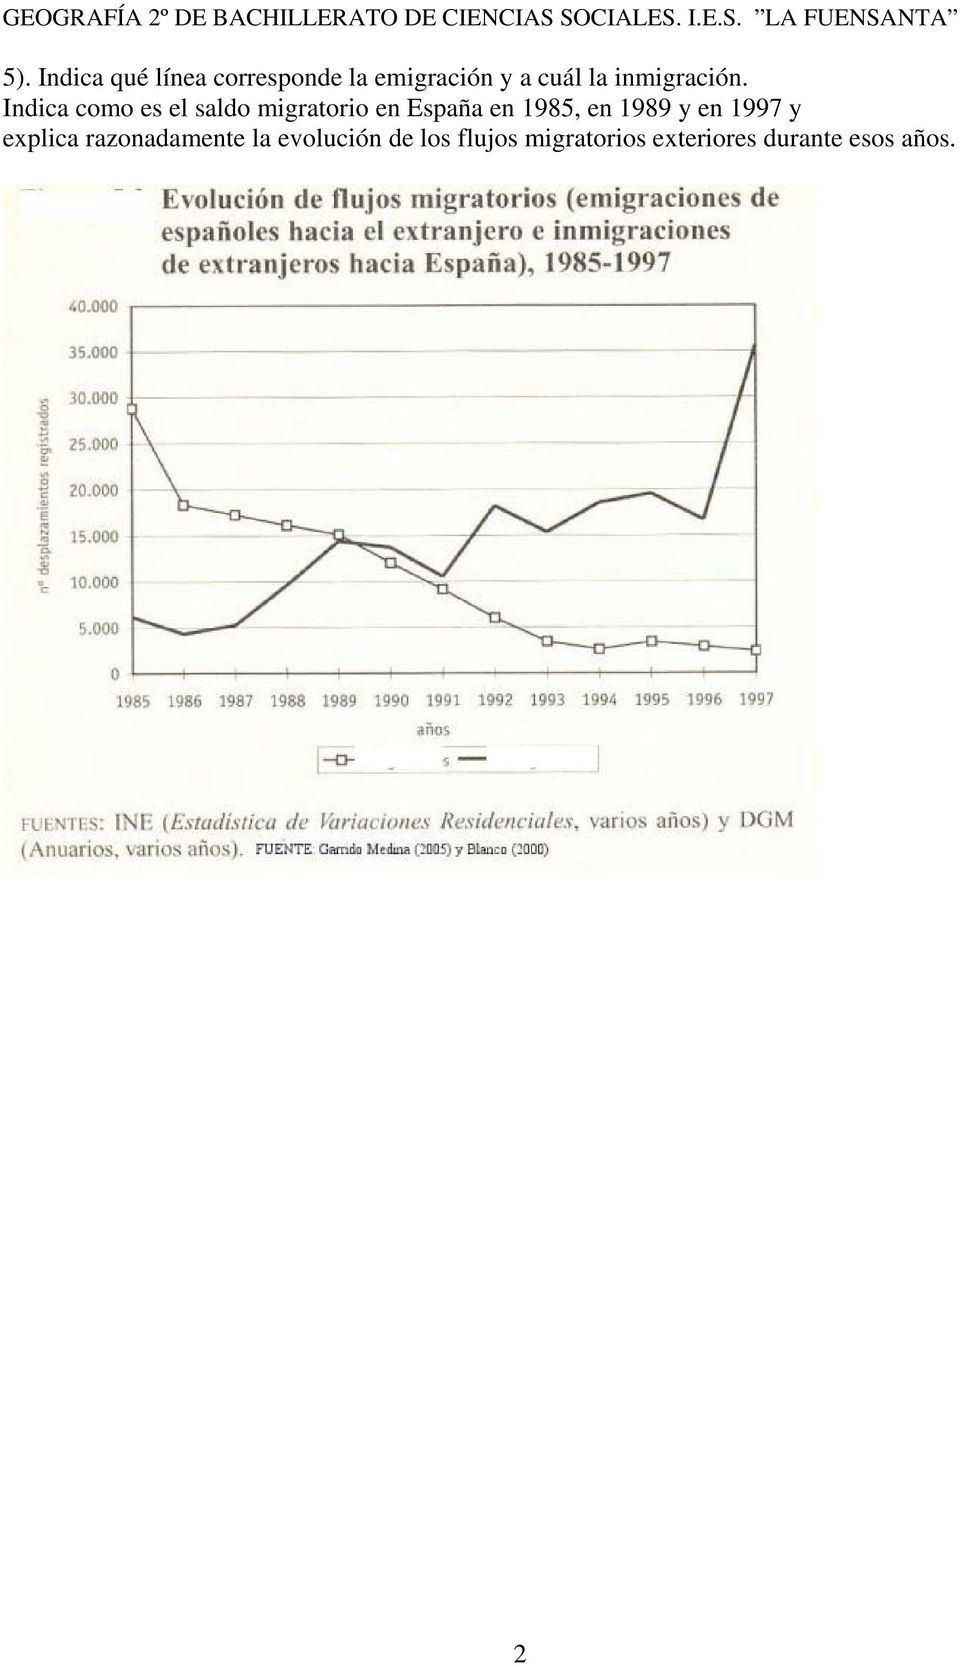 Indica como es el saldo migratorio en España en 1985, en